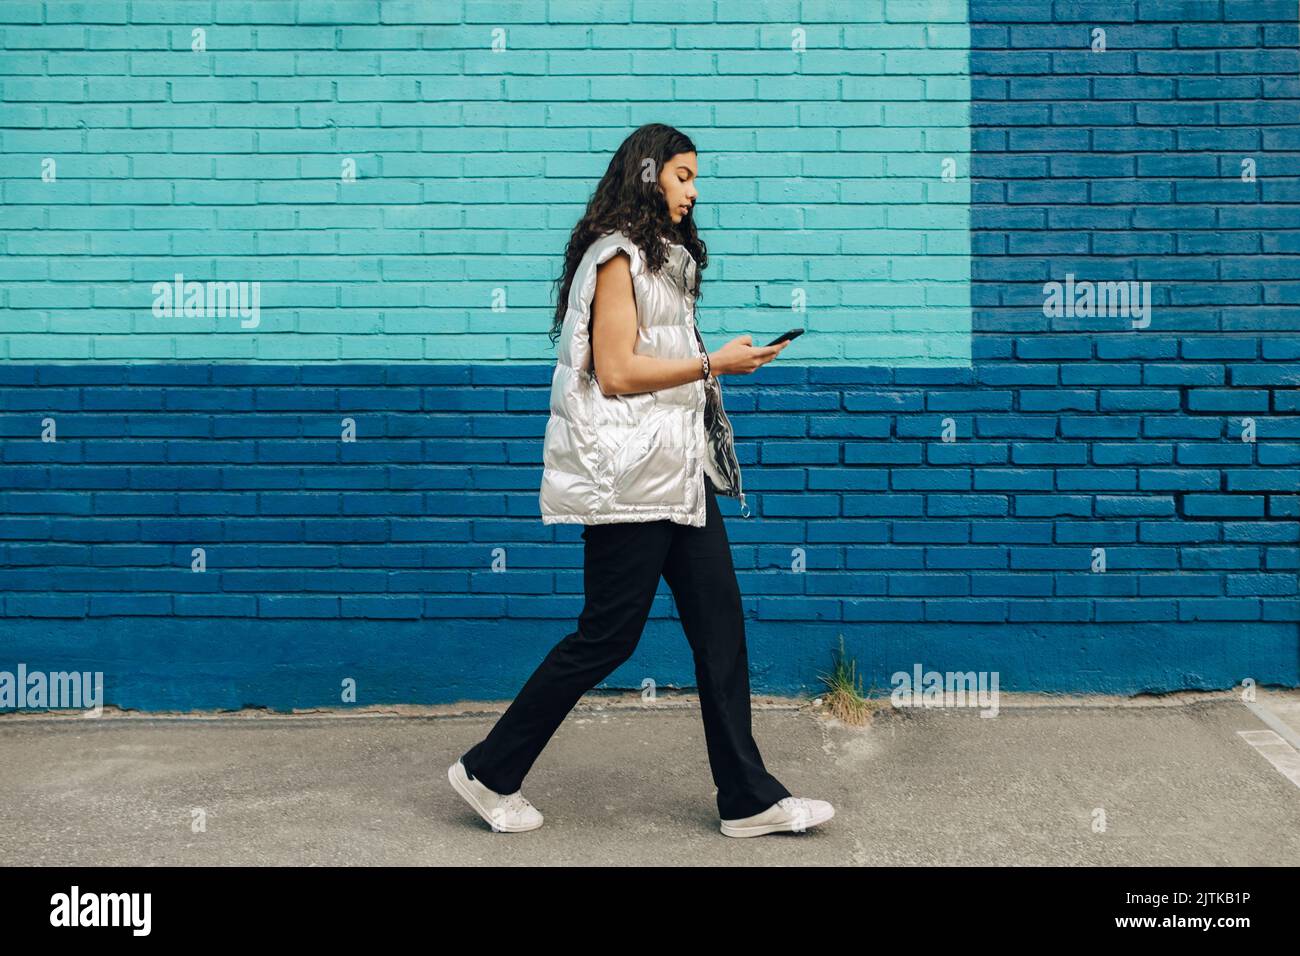 Une jeune femme utilisant un téléphone portable marchant près d'un mur de briques bleues Banque D'Images